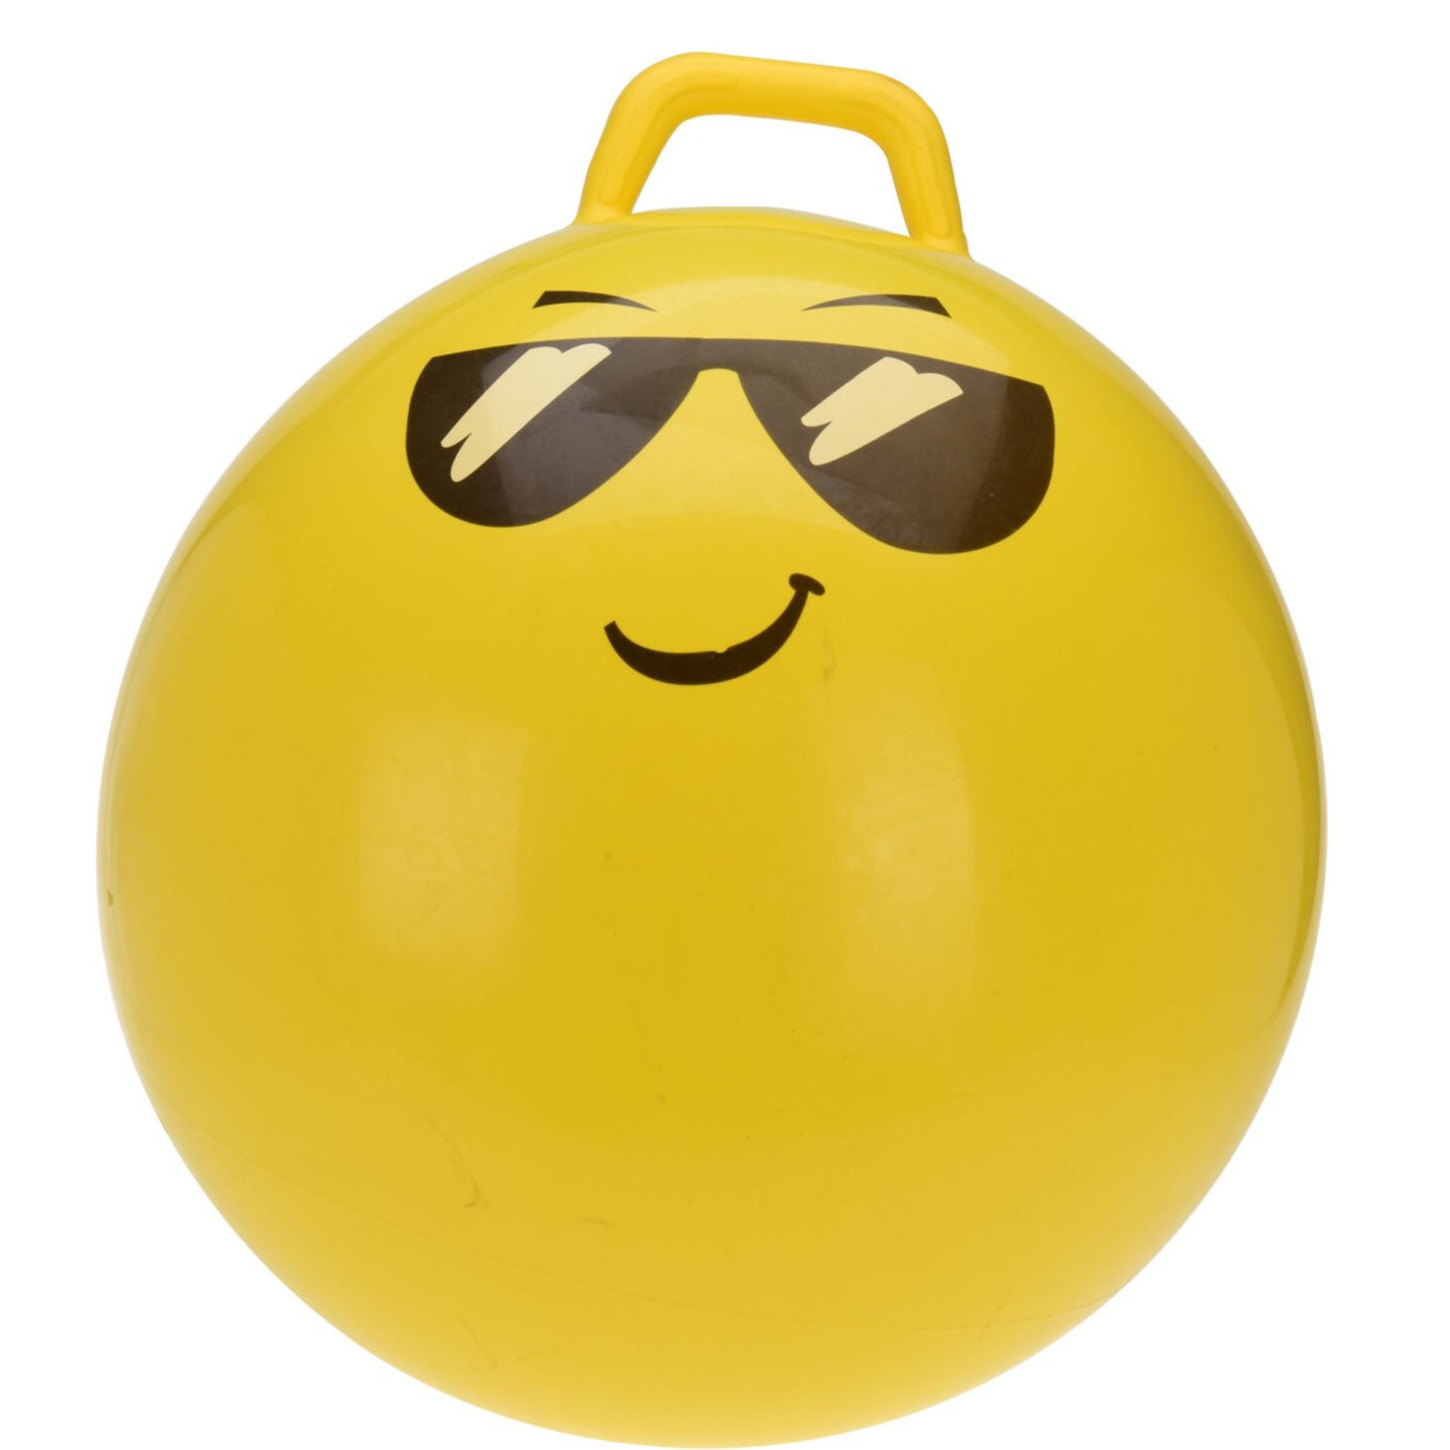 Skippybal buitenspeelgoed bal voor kinderen geel 55 cm